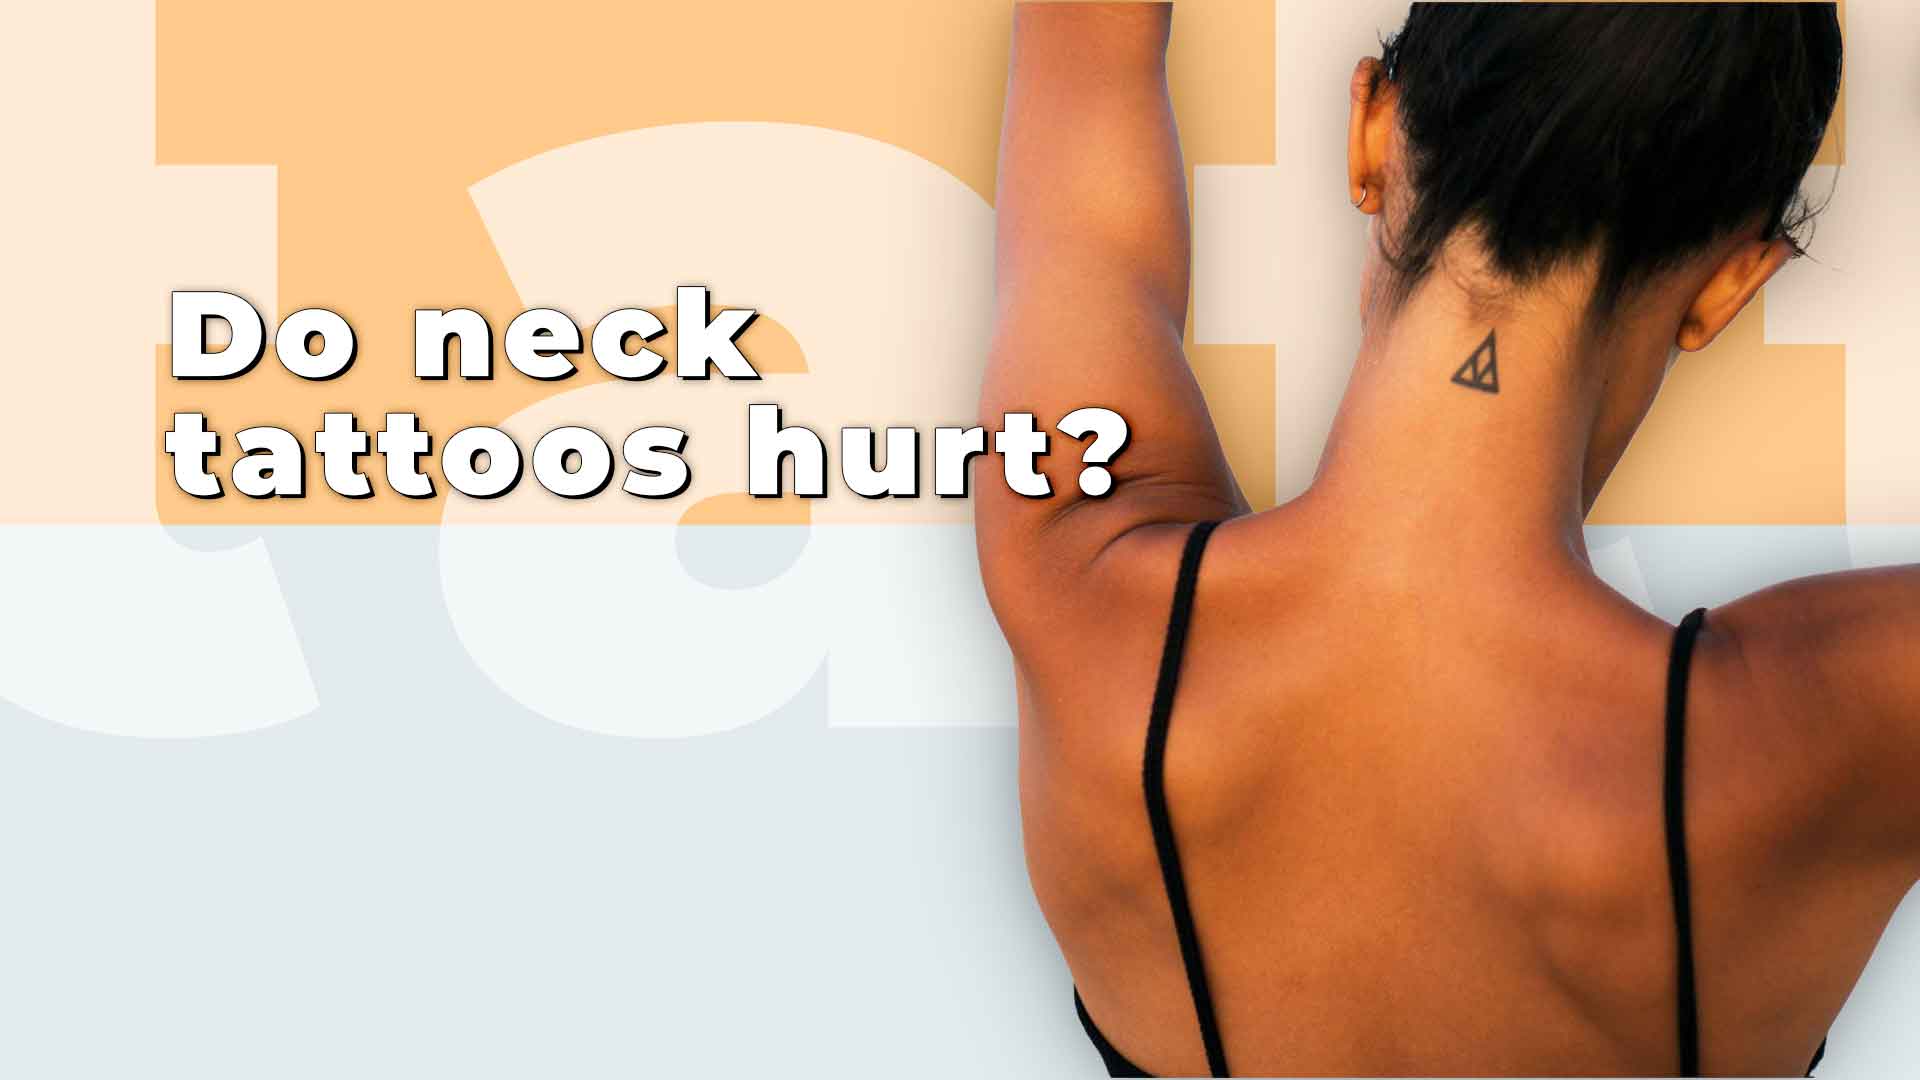 Do neck tattoos hurt?